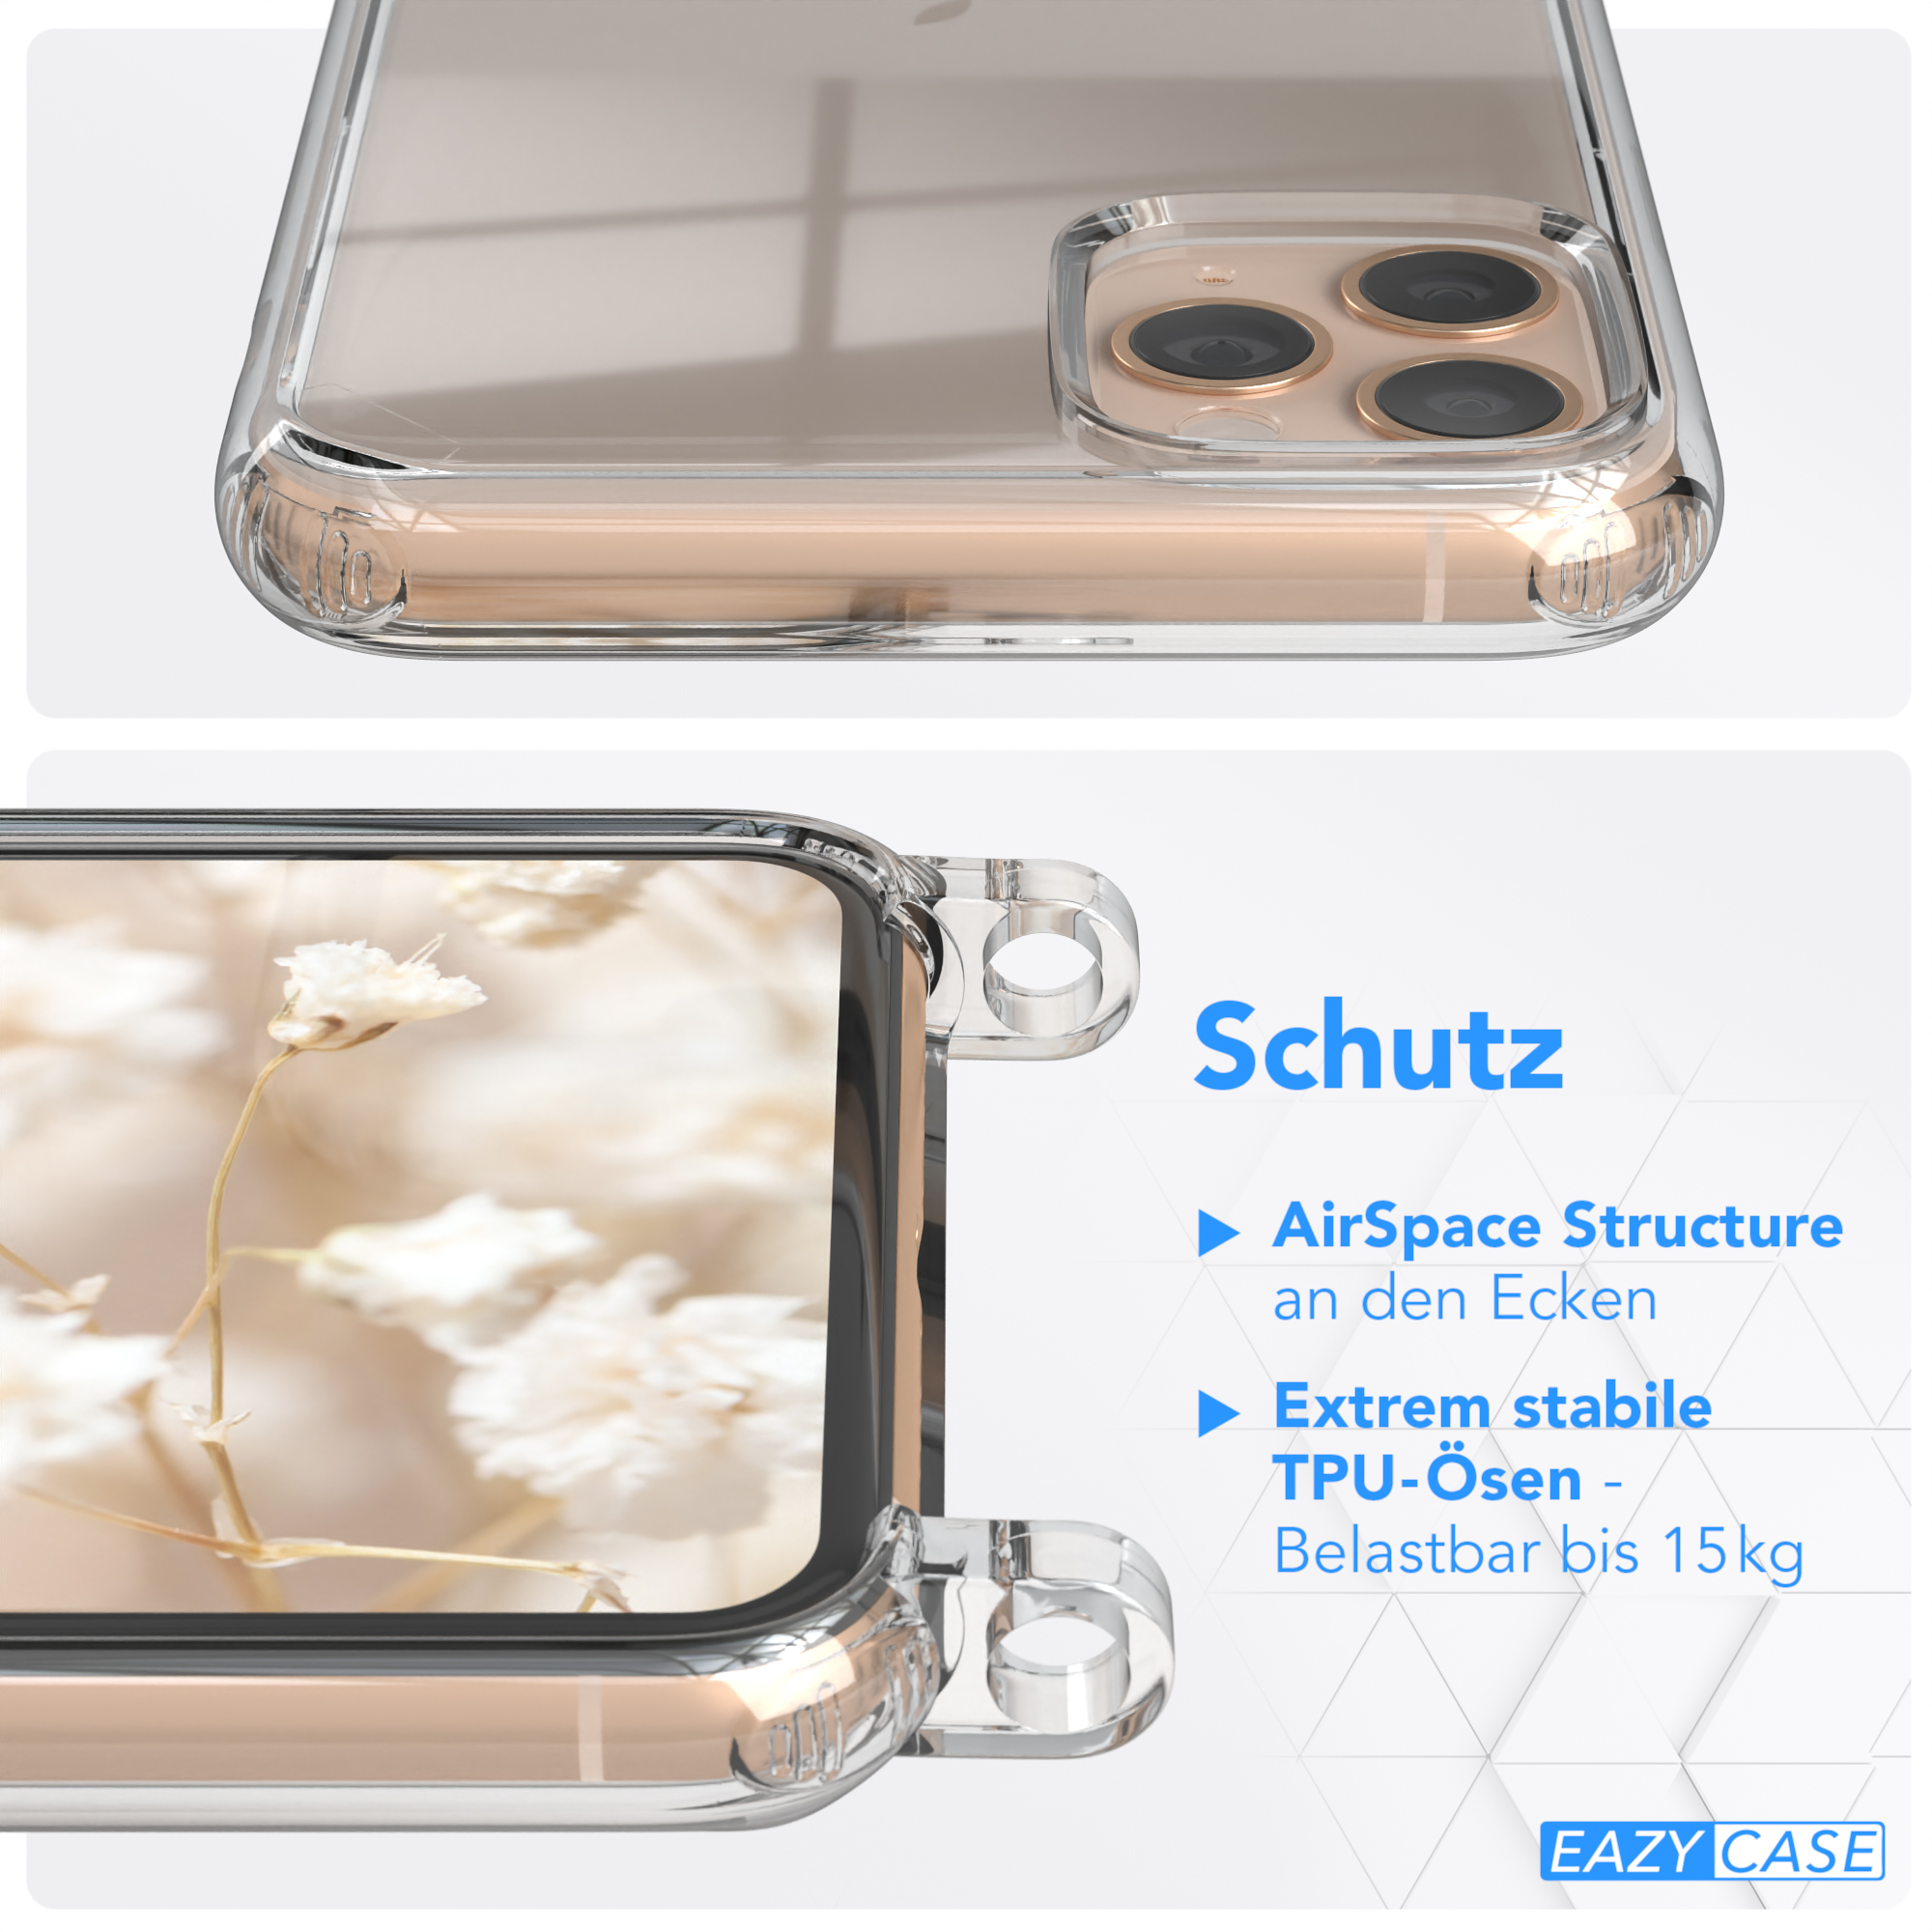 Max, Style, Blau Boho EAZY / Umhängetasche, Apple, Handyhülle mit Weiß Pro iPhone Transparente CASE 11 Kordel